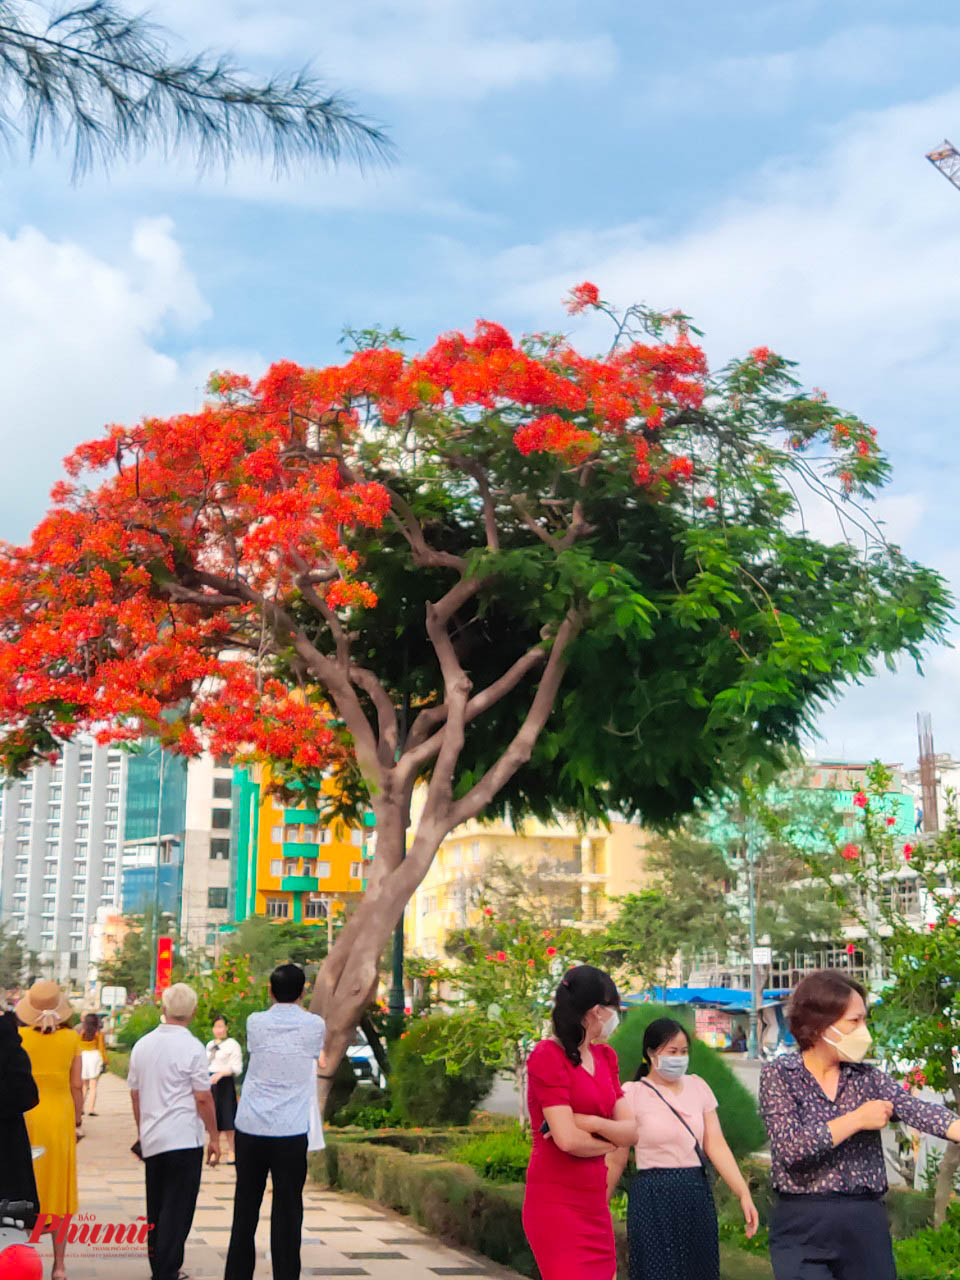 Cây phượng tại đường Thùy Vân, Thành phố Vũng Tàu với ngoại hình có một không hai: nửa xanh ngắt màu lá, nửa đỏ rực màu hoa đang thu hút rất đông người dân và du khách tới chiêm ngưỡng, chụp ảnh.